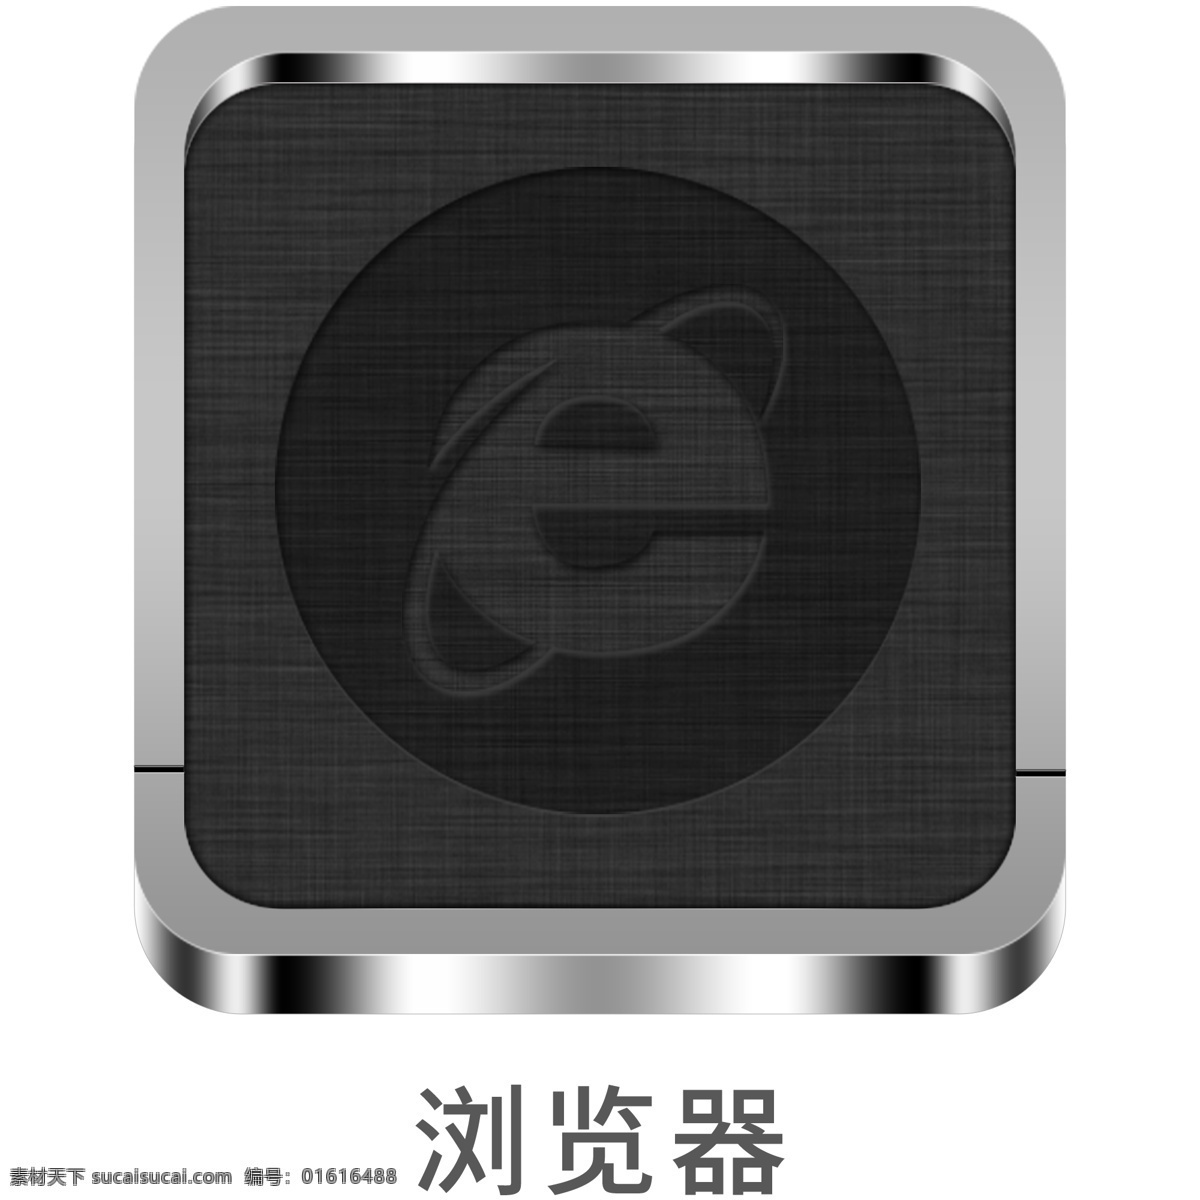 手机 金属 风 主题 icon 浏览器 元素 金属质感 图标 手机主题 ui图标 设计元素 冷色系 金属图标